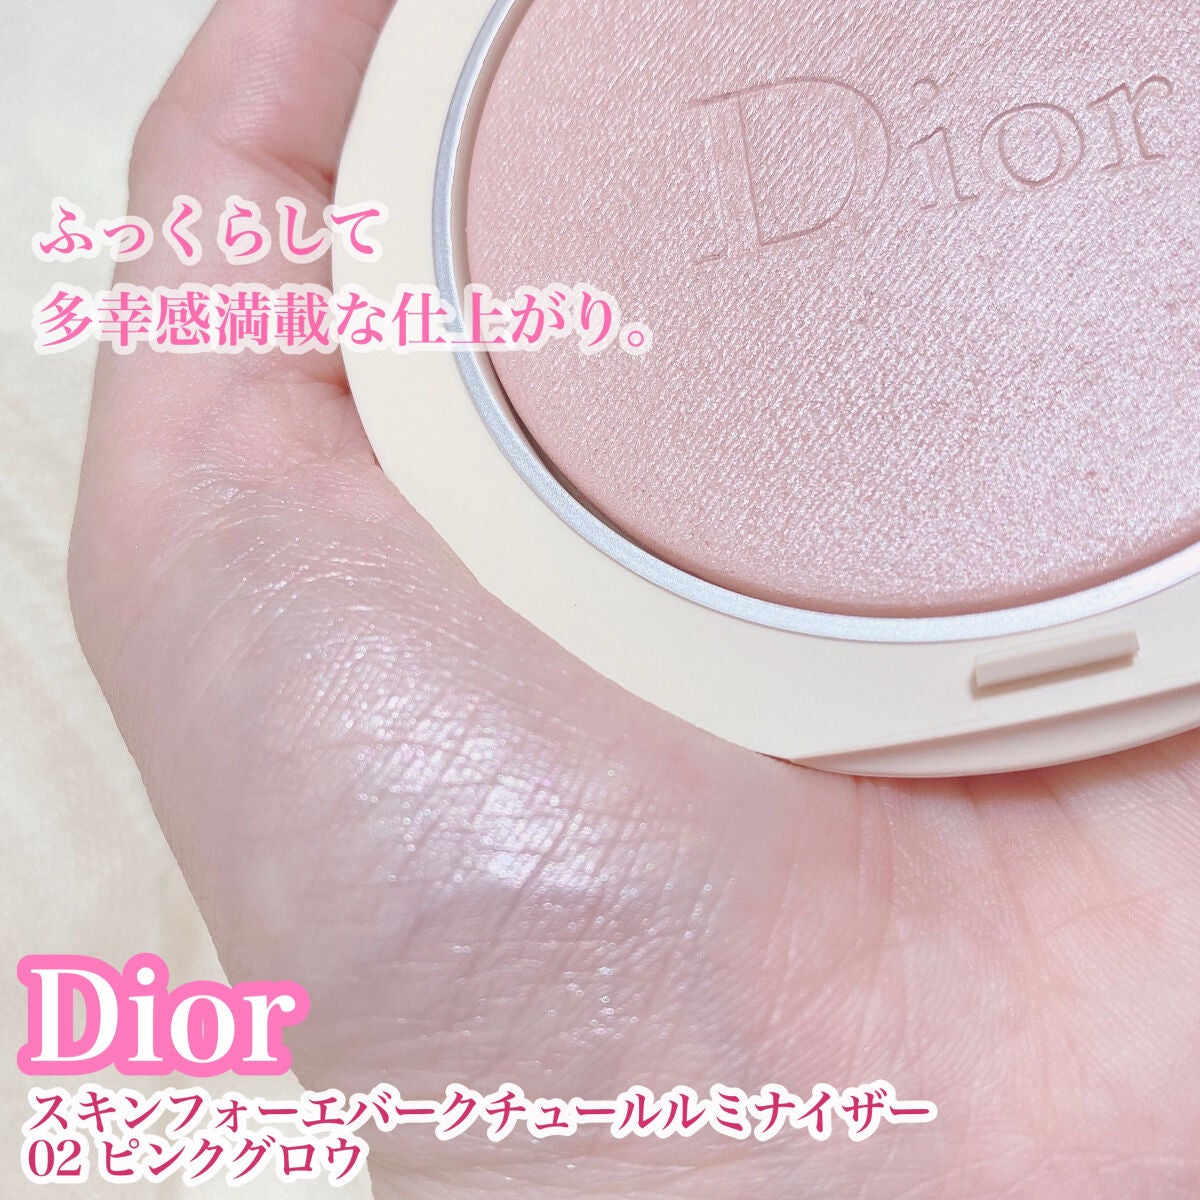 Dior スキンフォーエヴァークチュールルミナイザー 02 PINK GLOW